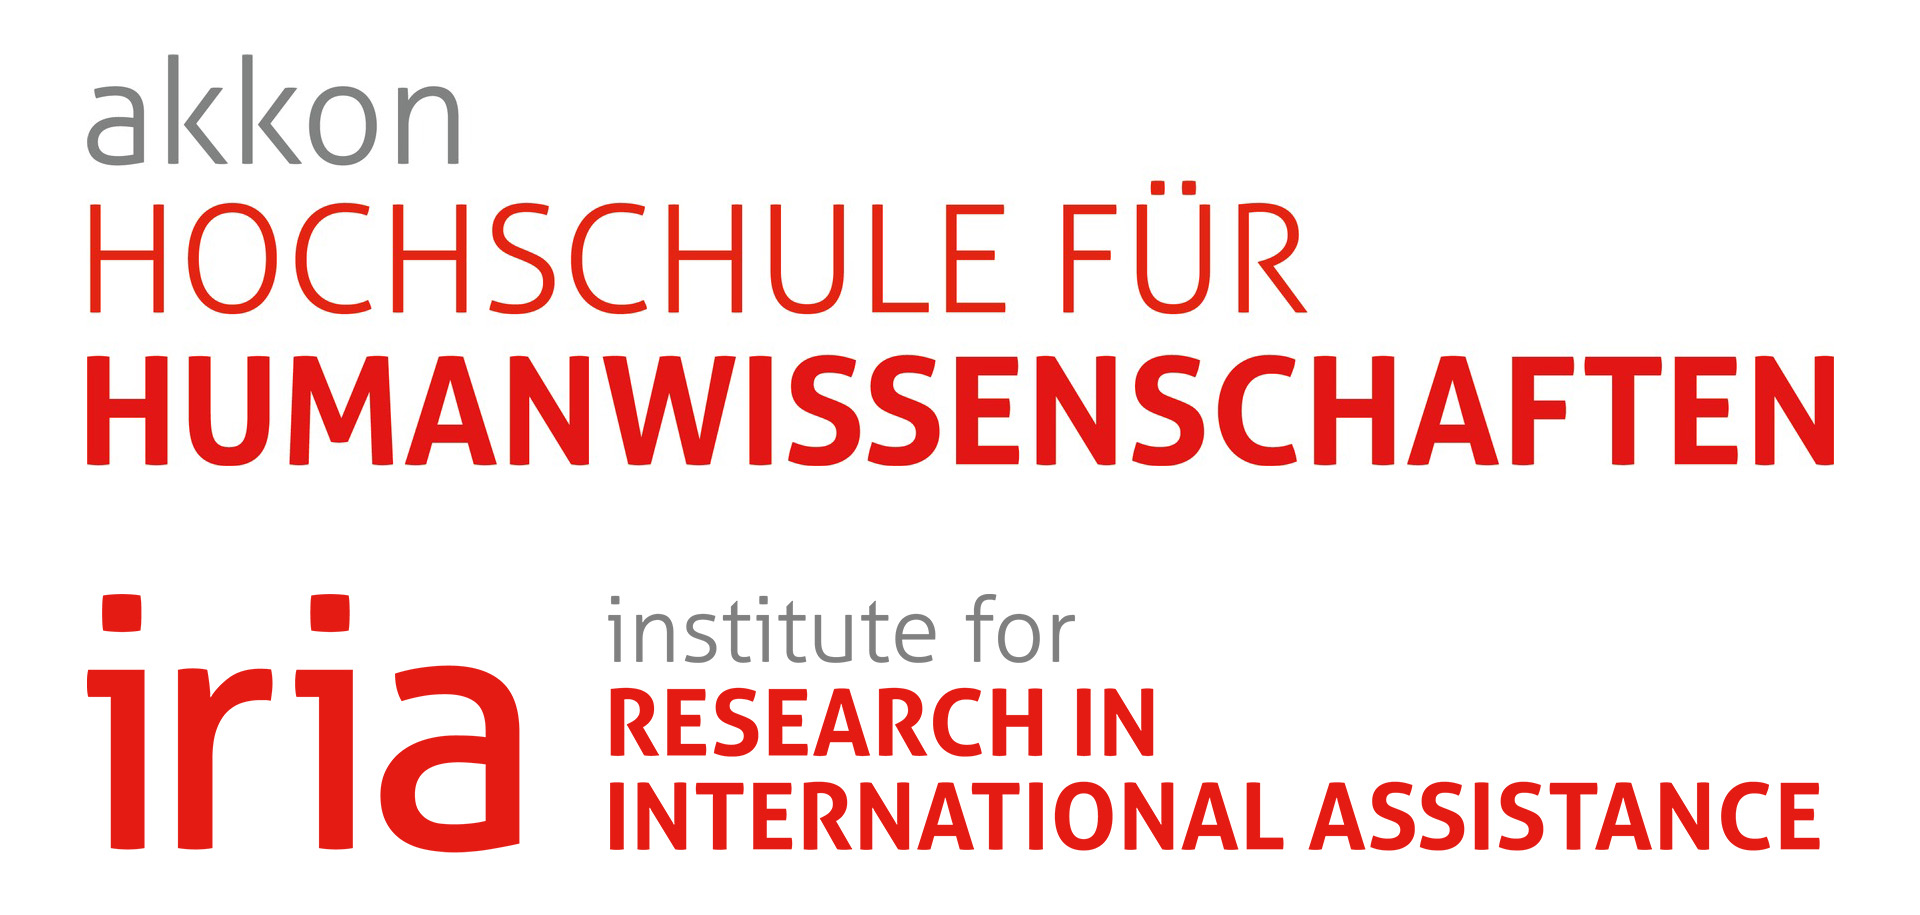 Logo Akkon Hochschule für Humanwissenschaften, Berlin, mit ihrem Institute for Research and International Assistance (IRIA)